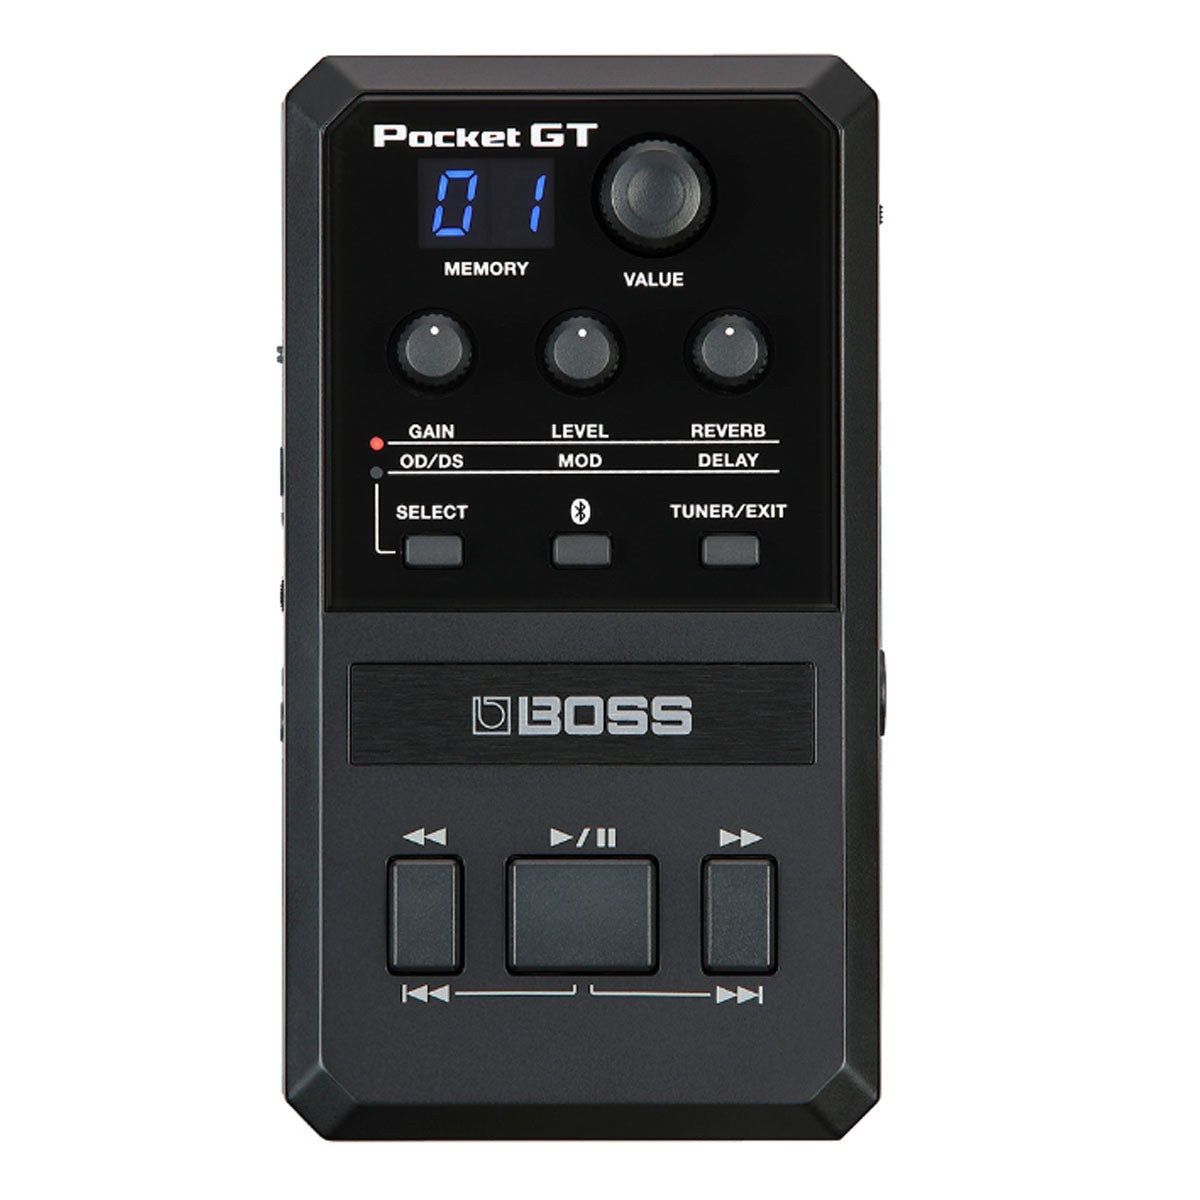 Boss POCKET-GT Pocket GT FX Processor